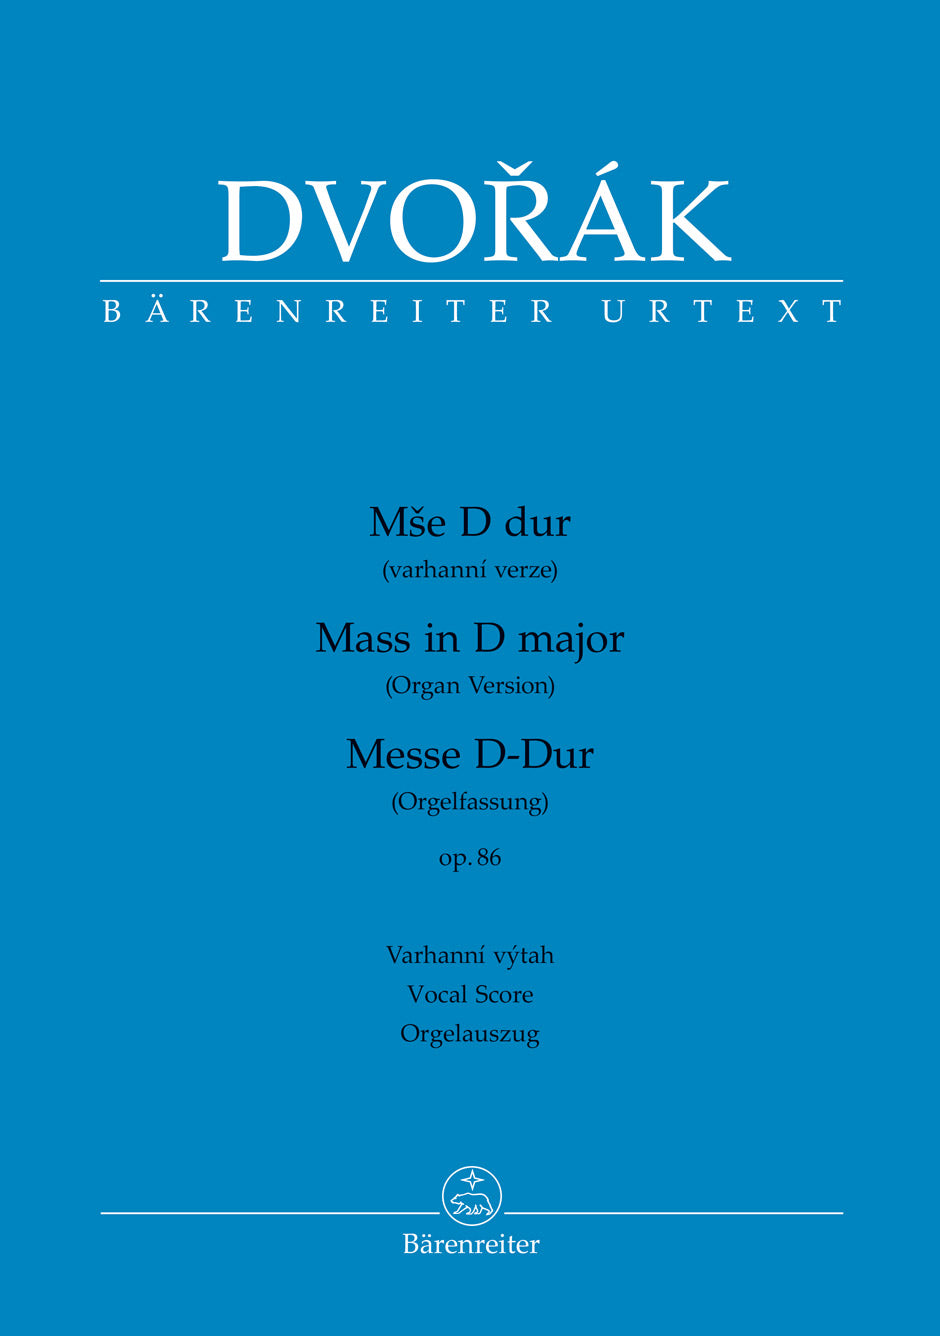 Dvorak Mass in D major op. 86 (Organ version)